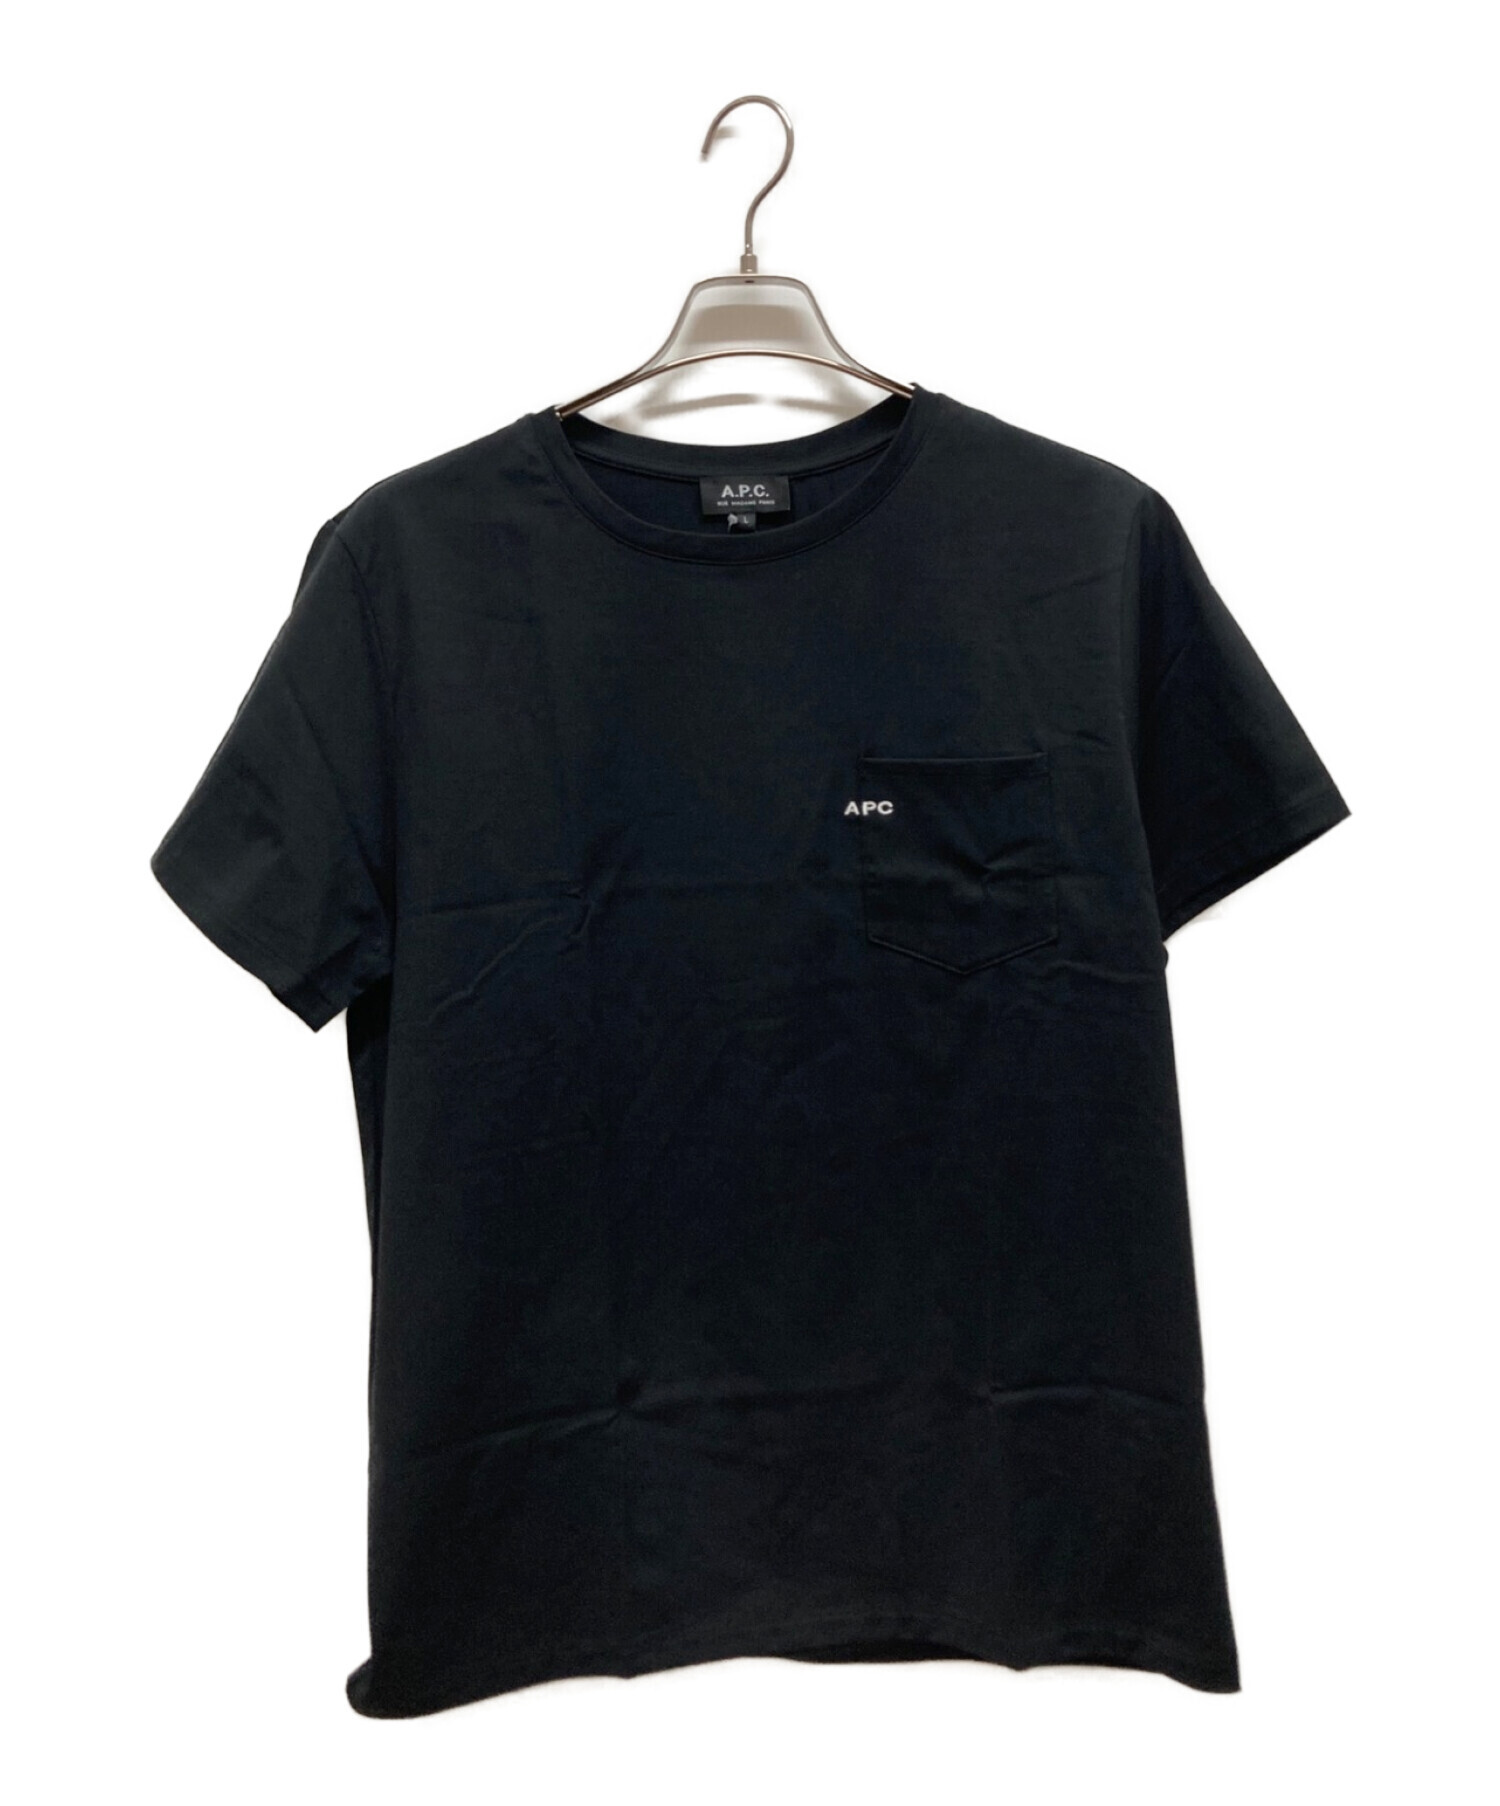 A.P.C. (アー・ペー・セー) 刺繍ロゴポケットTシャツ ブラック サイズ:L 未使用品